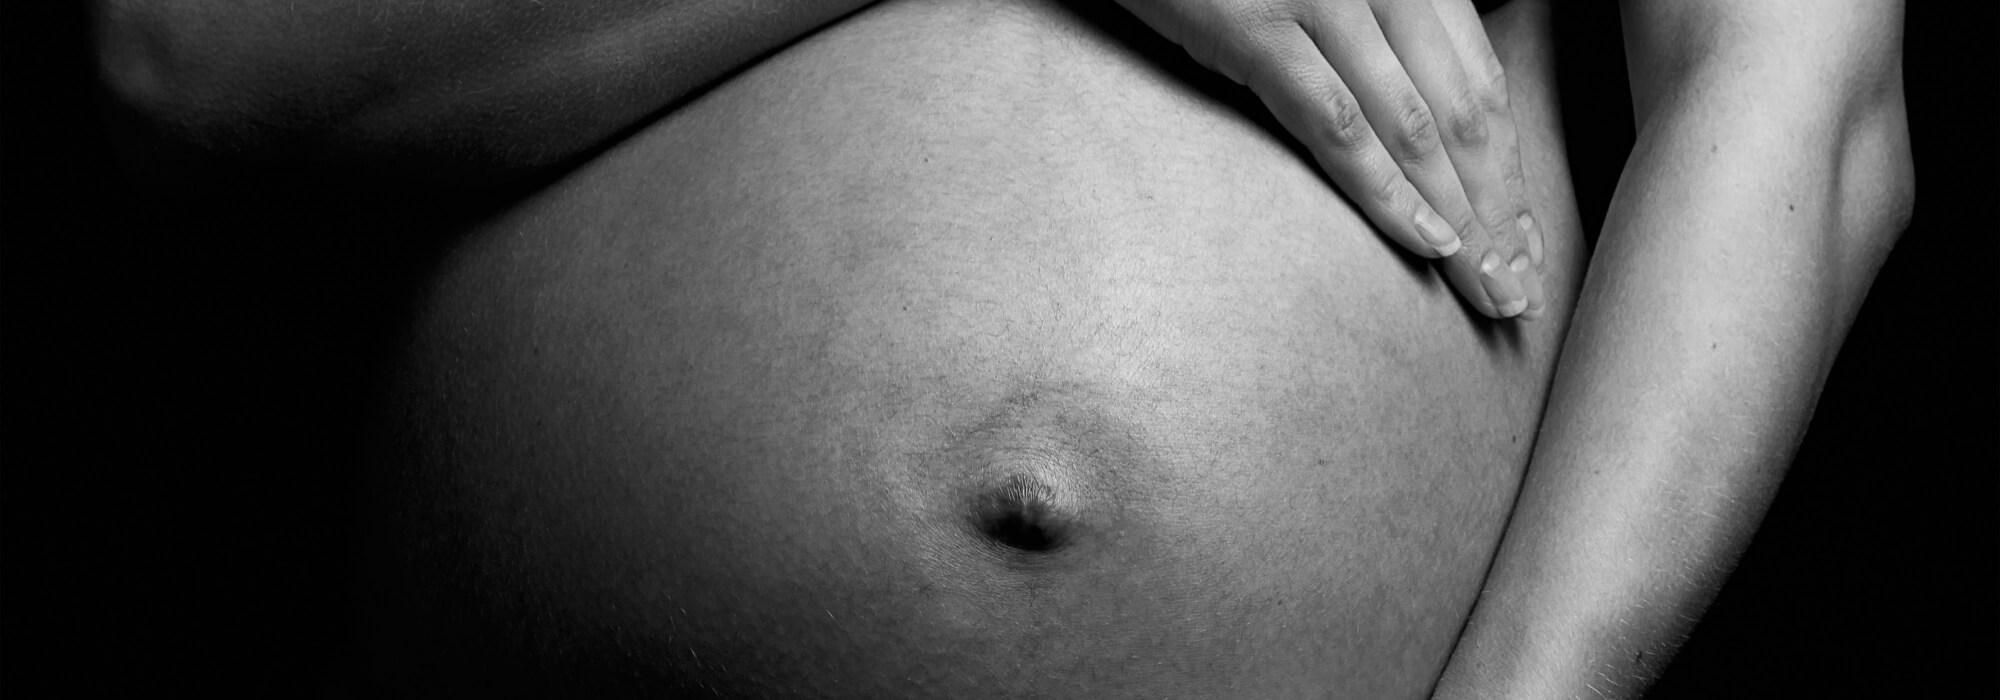 Zdrowe macierzyństwo - planowanie ciąży, jak przygotować się do ciąży